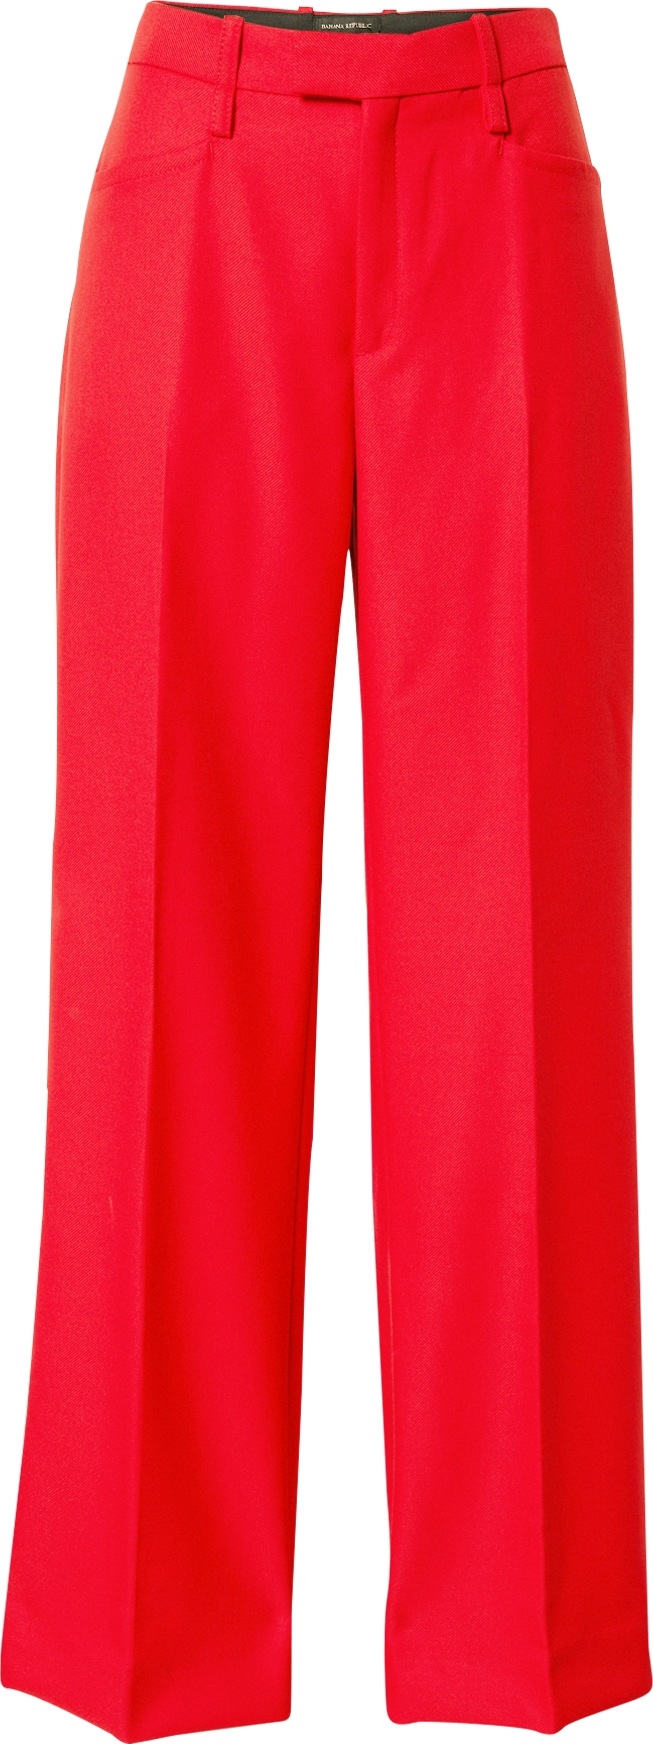 Banana Republic Kalhoty s puky červená